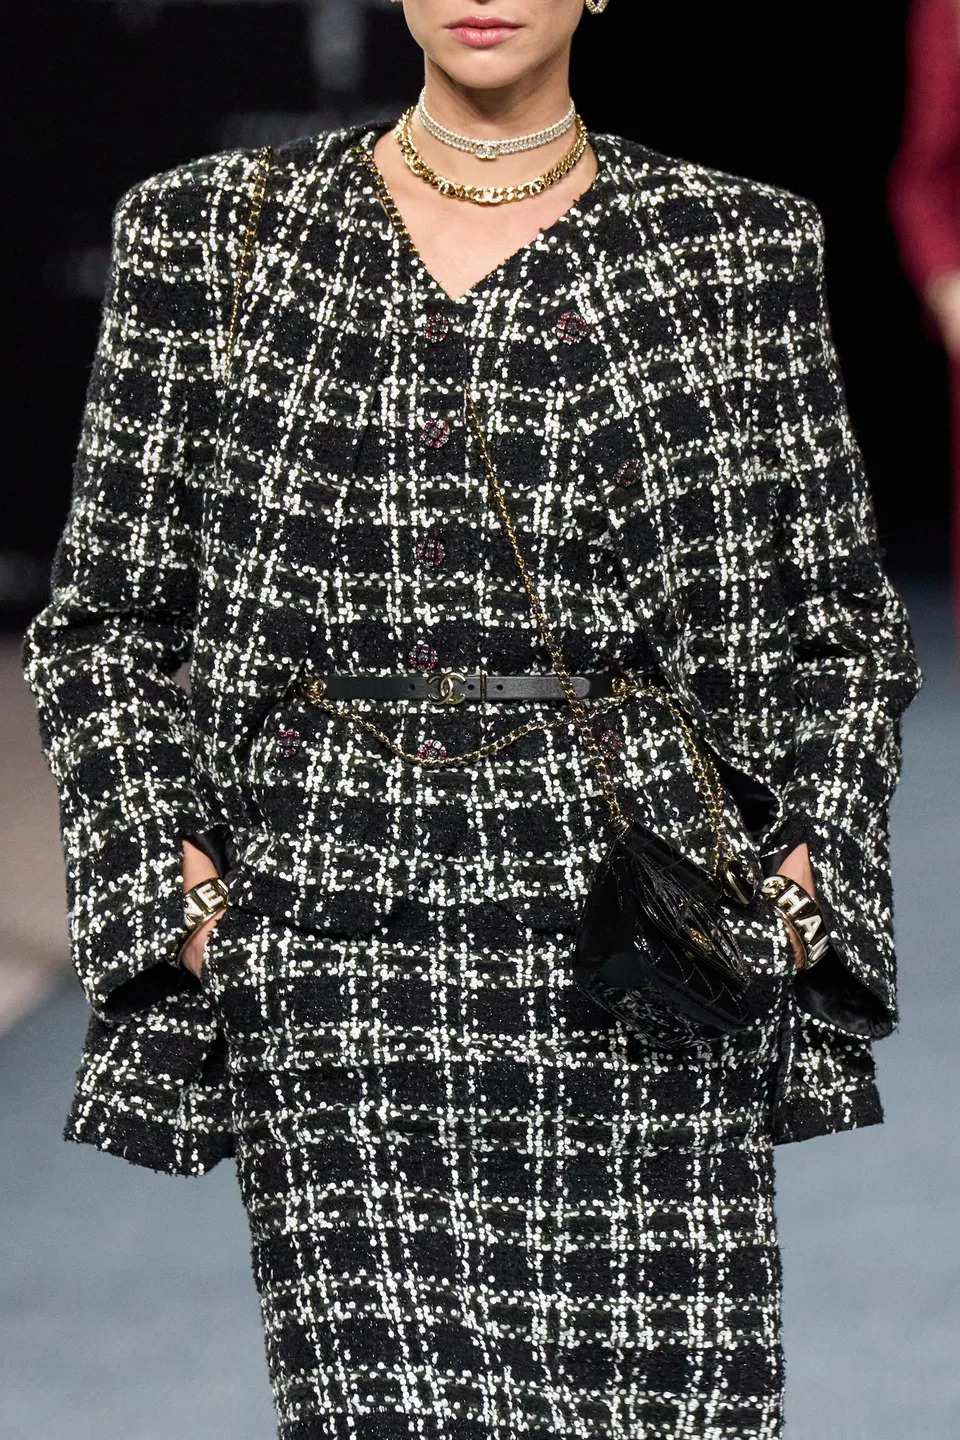 Áo khoác vải tweed của Chanel có gì đặc biệt